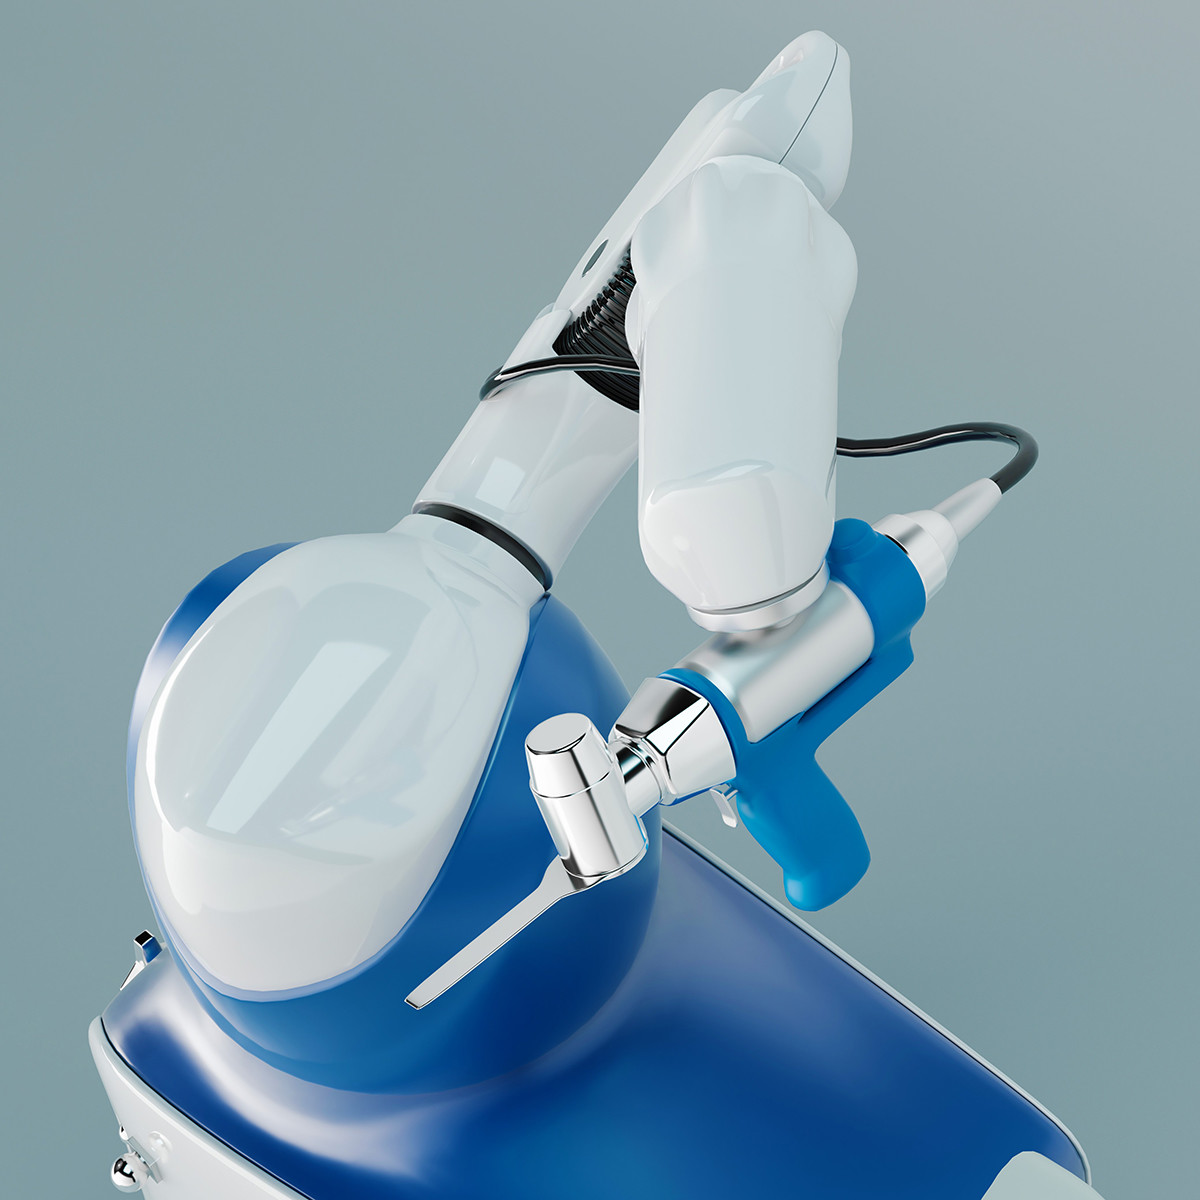 MAKO Rio Robotic Arm - Robotic Surgery